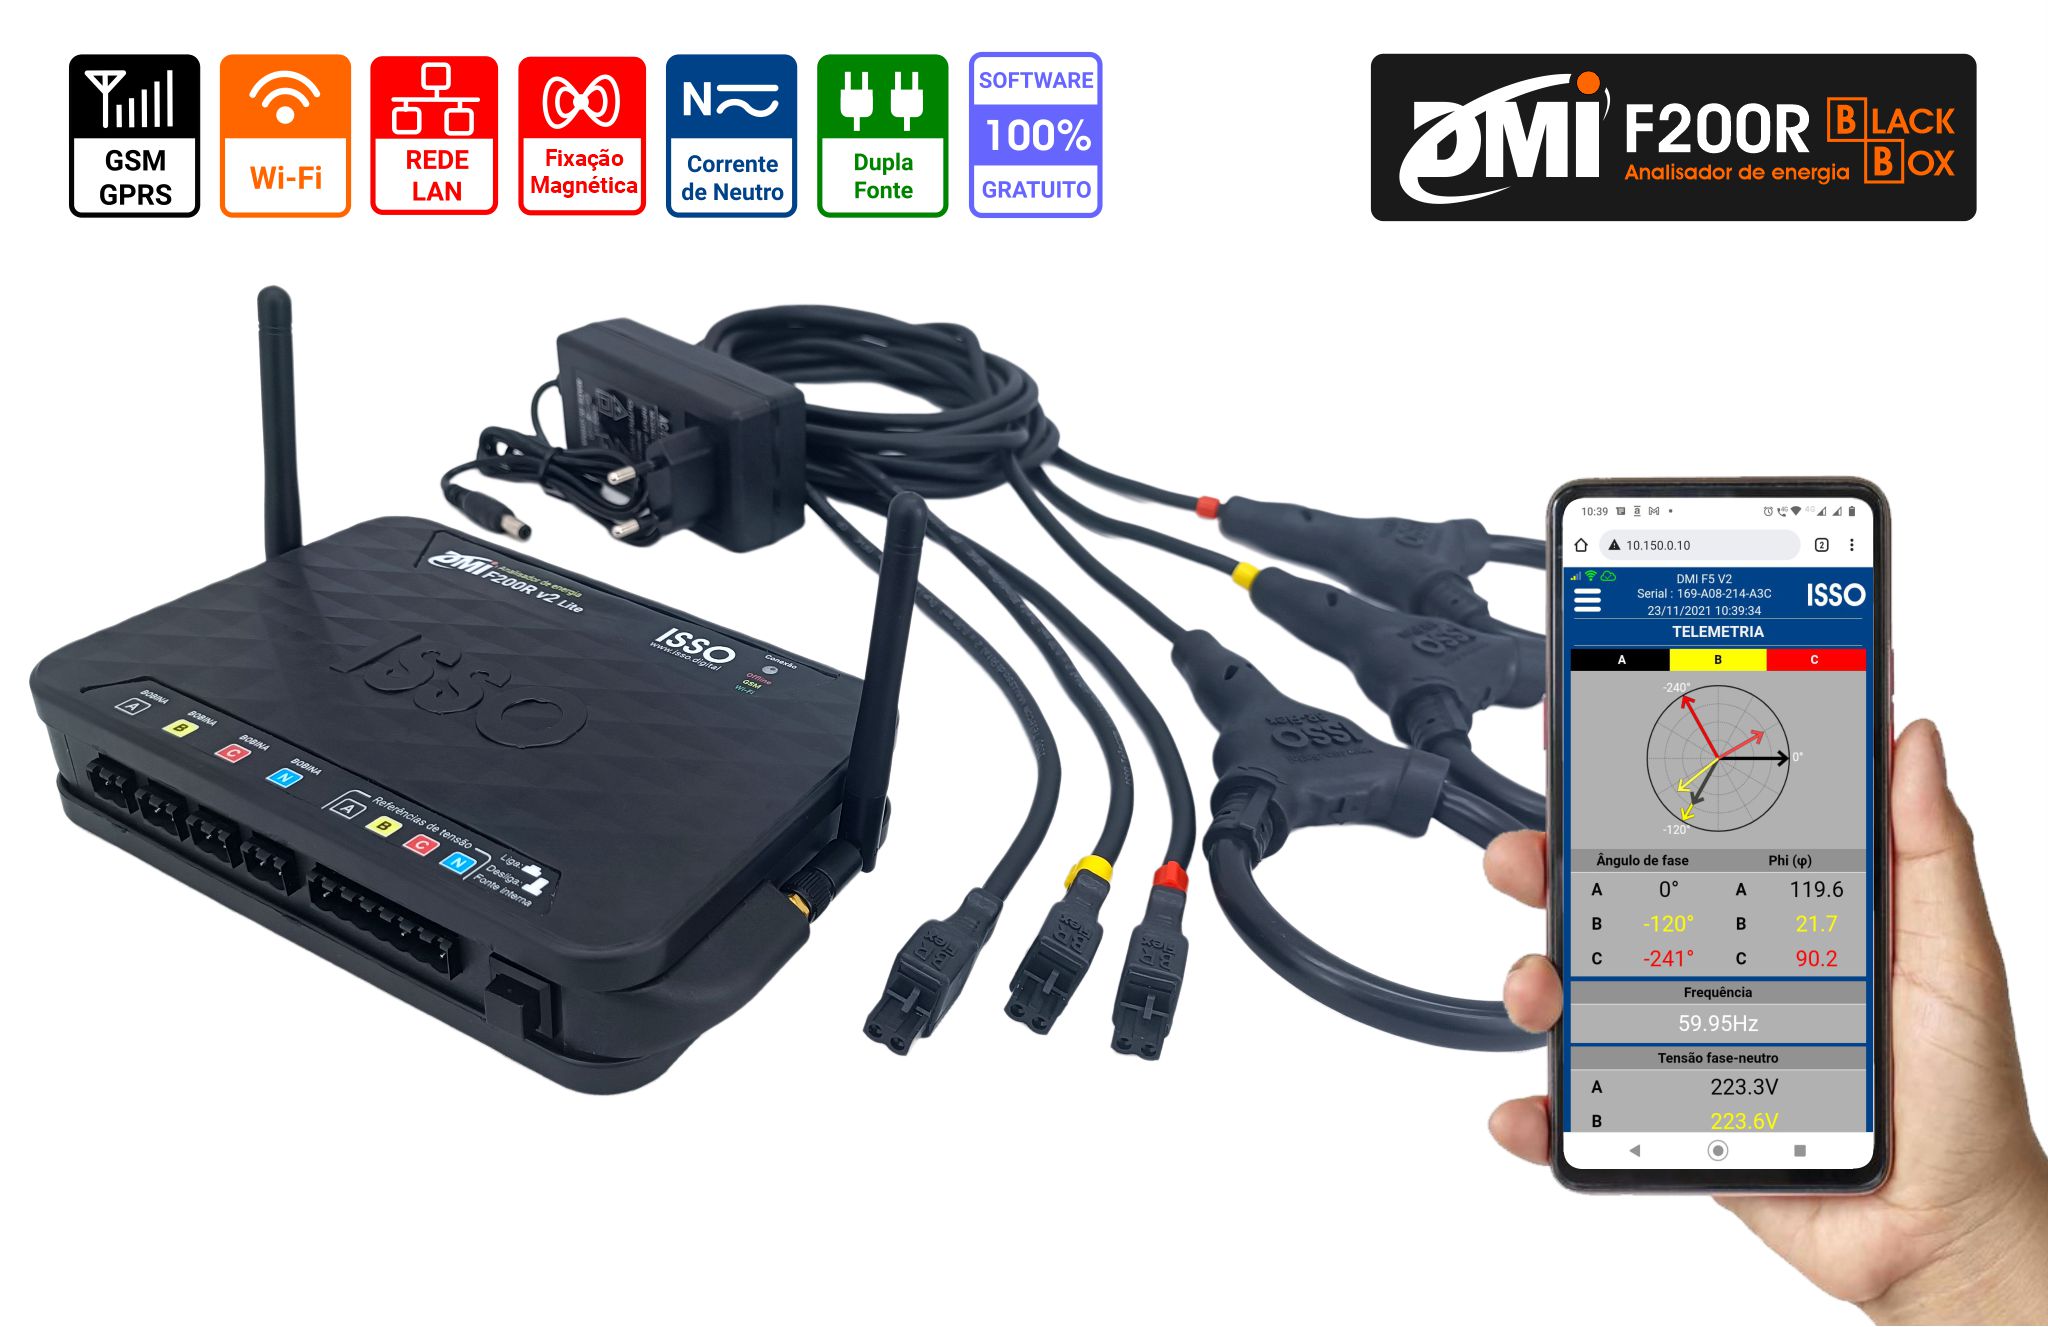 Analisador de energia DMI F200R Black Box Bidirecional, conexão Wifi, sensores de corrente flexíveis, kwh, kvar, harmônicas 